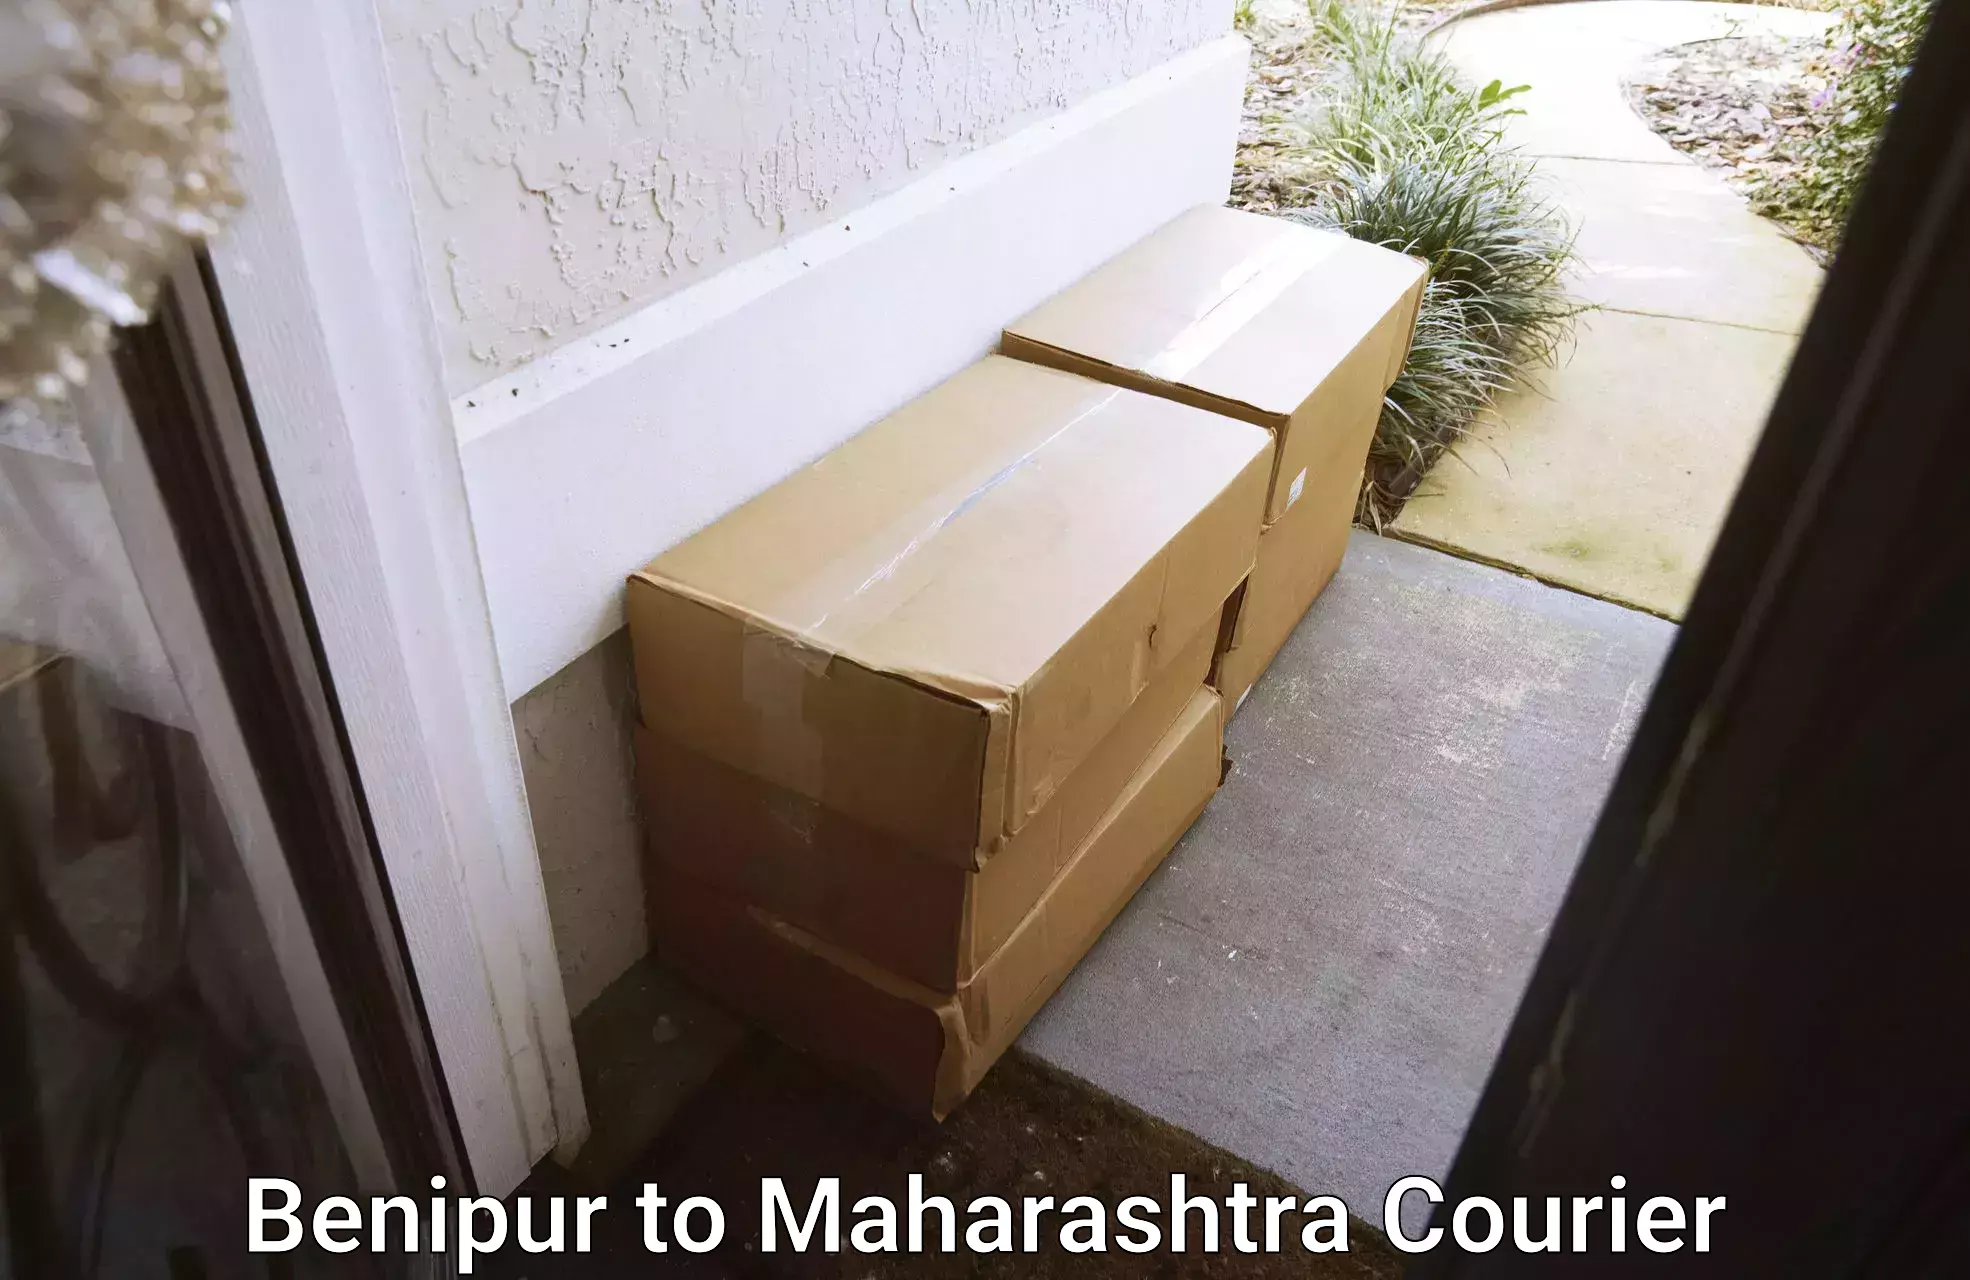 Furniture moving experts Benipur to Maharashtra